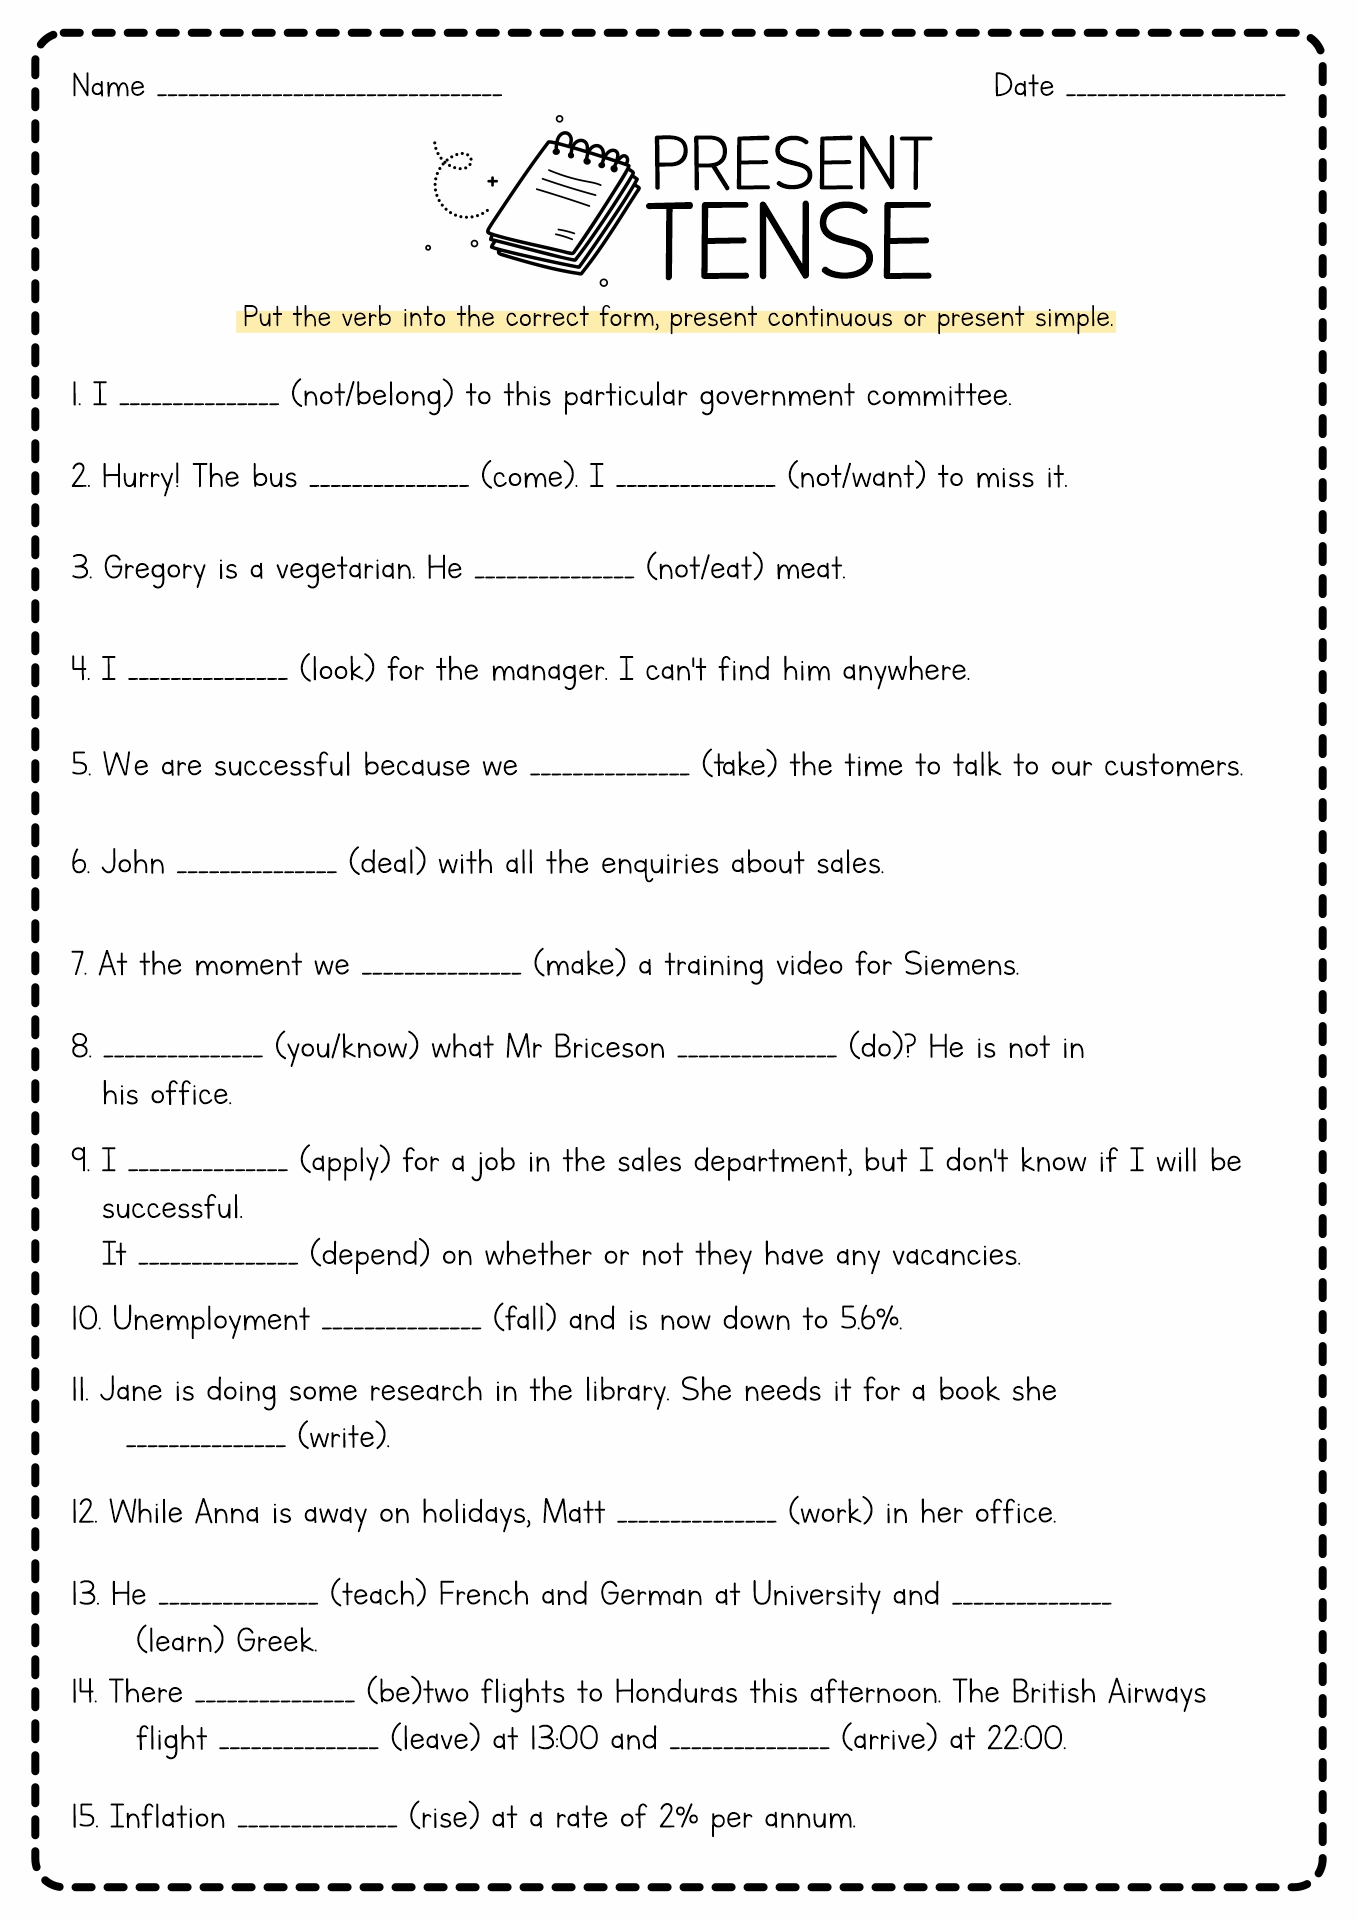 Present Tense Verb Worksheet Printable Image